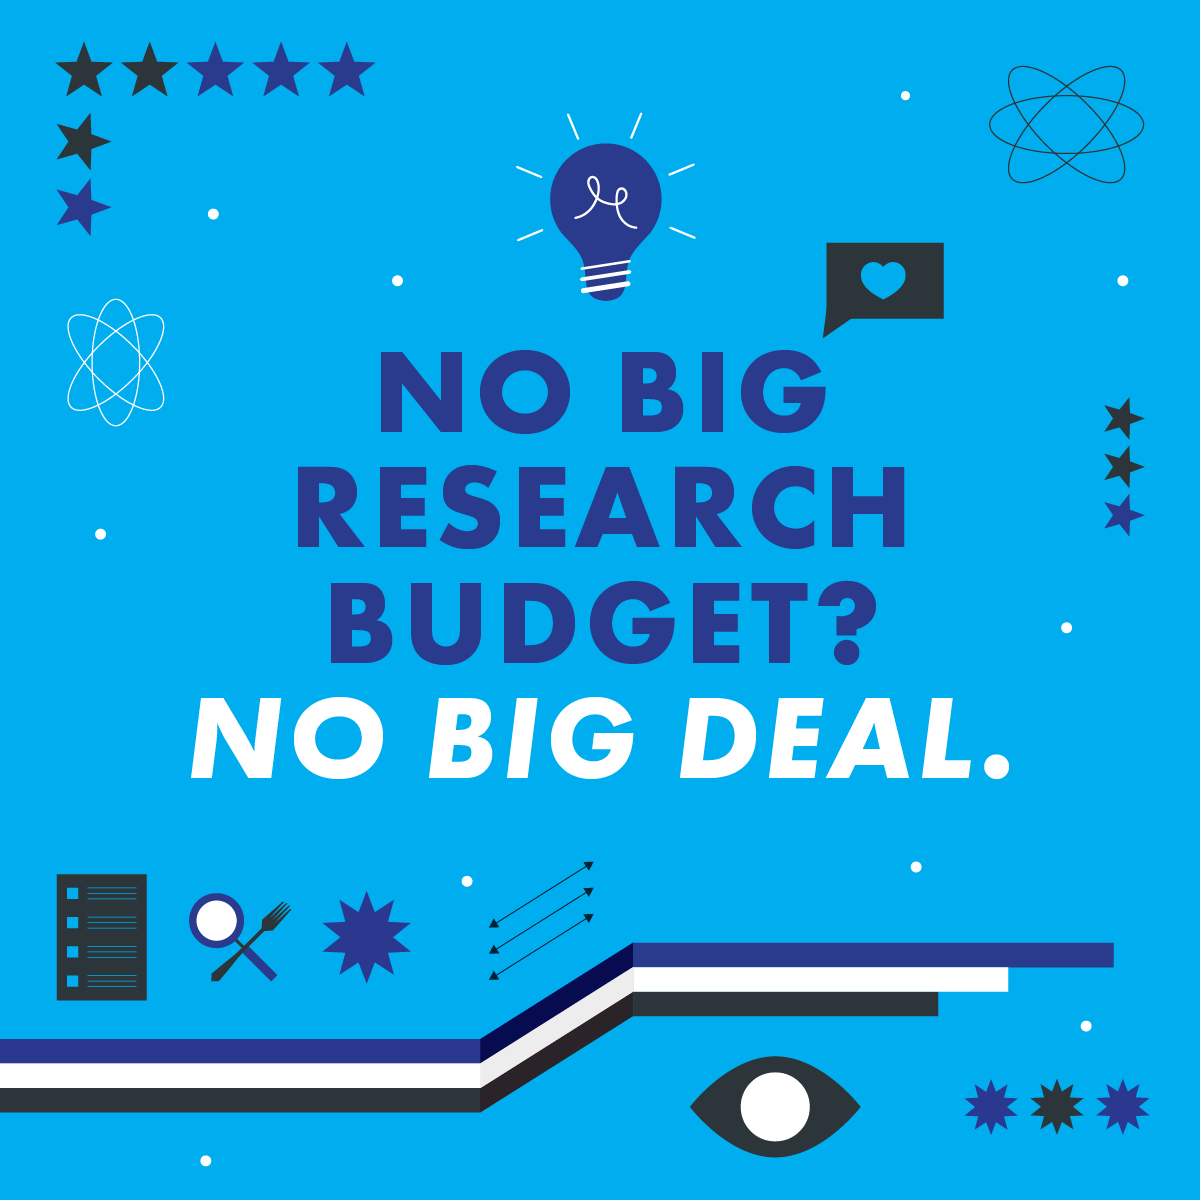 No big research budget? No big deal.